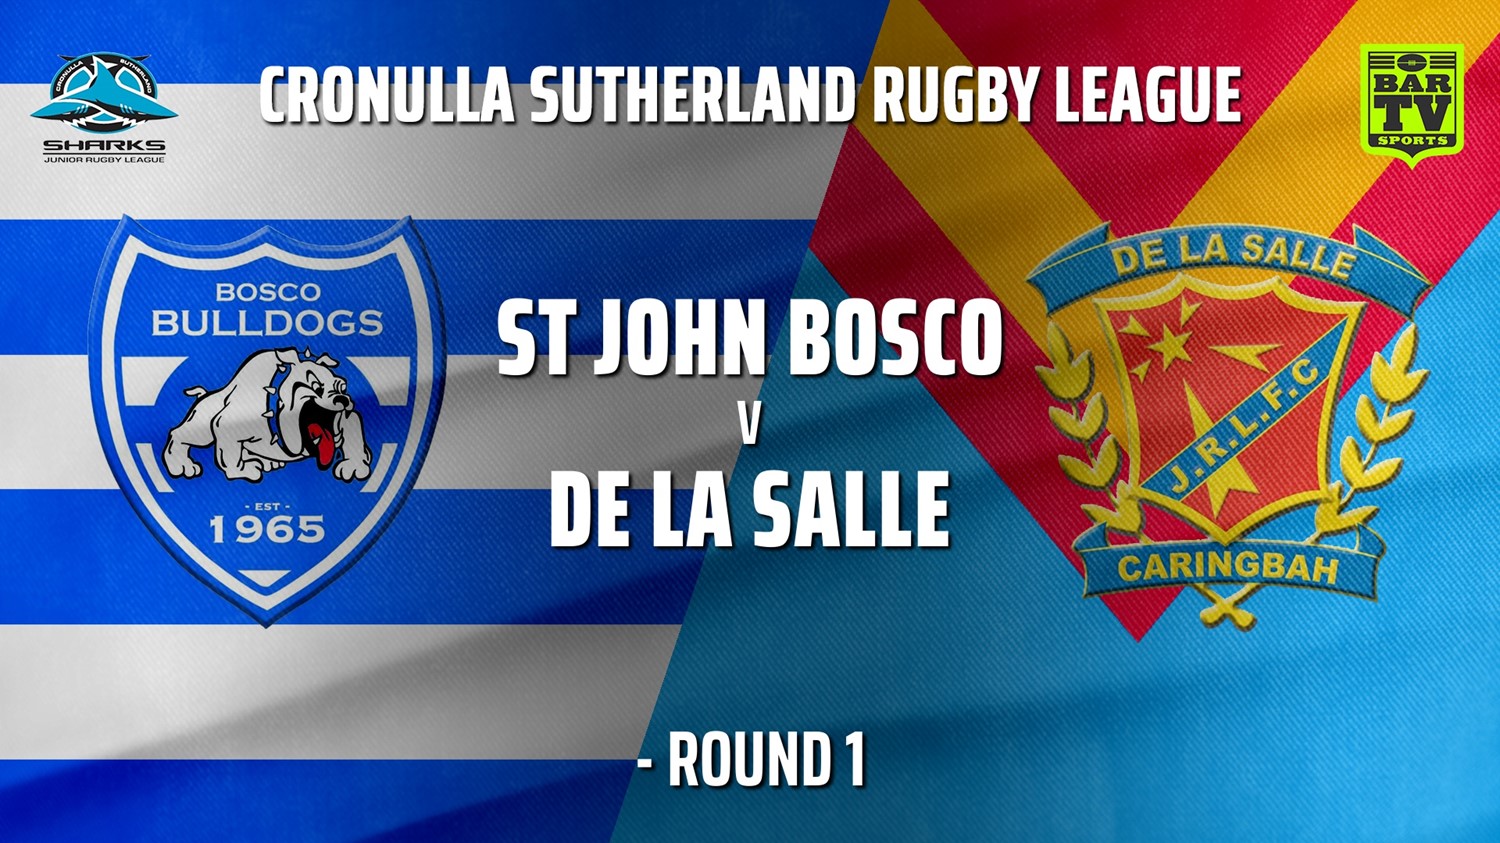 210501-Cronulla JRL Under 10s Silver Round 1 - St John Bosco Bulldogs v De La Salle Minigame Slate Image